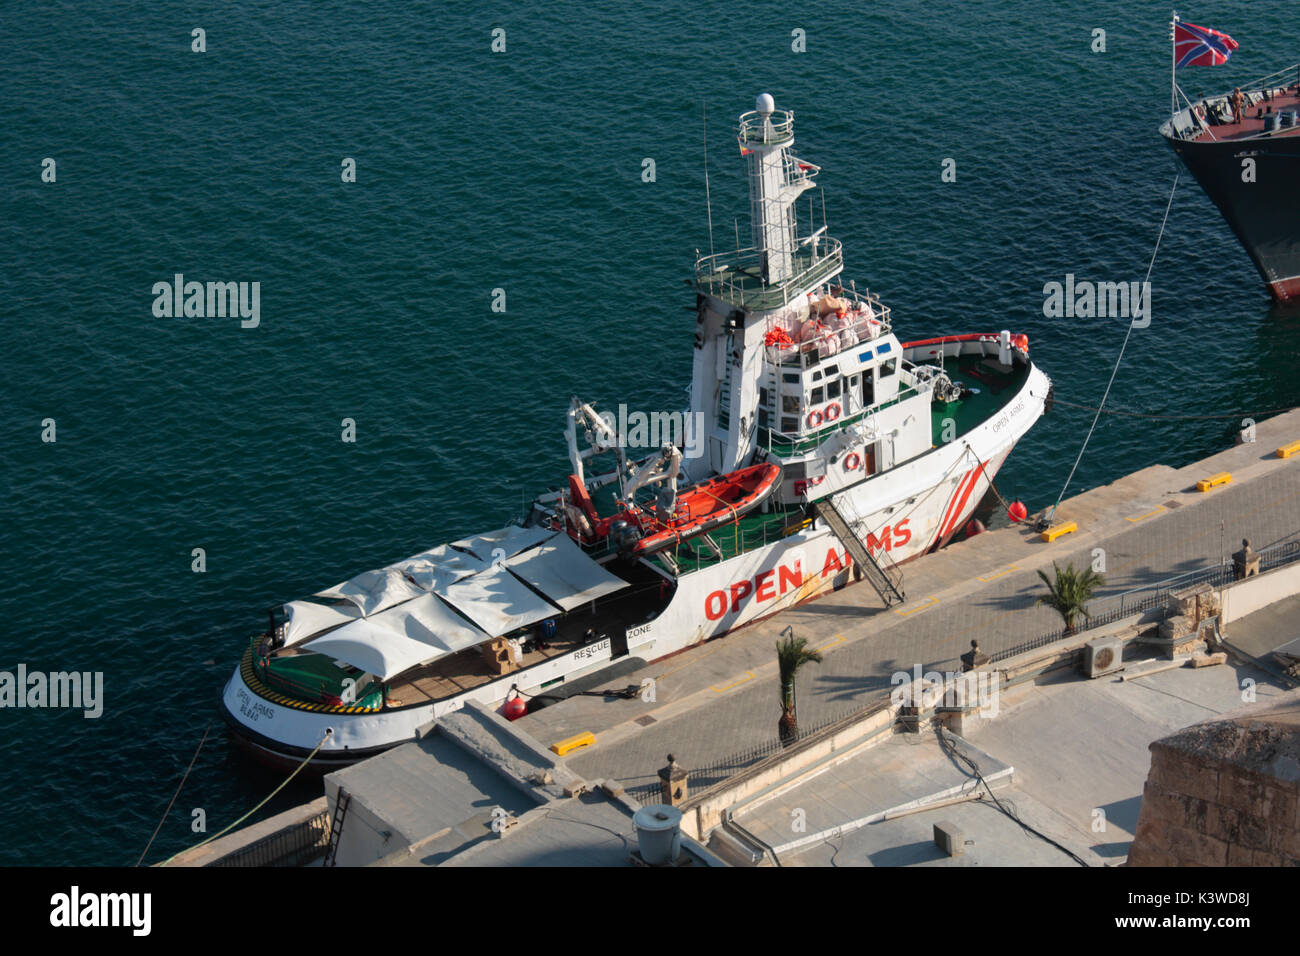 Die Rettung Schiff mit offenen Armen, von der Spanischen NRO Proactiva offenen Armen betrieben, in Maltas Grand Harbour Stockfoto